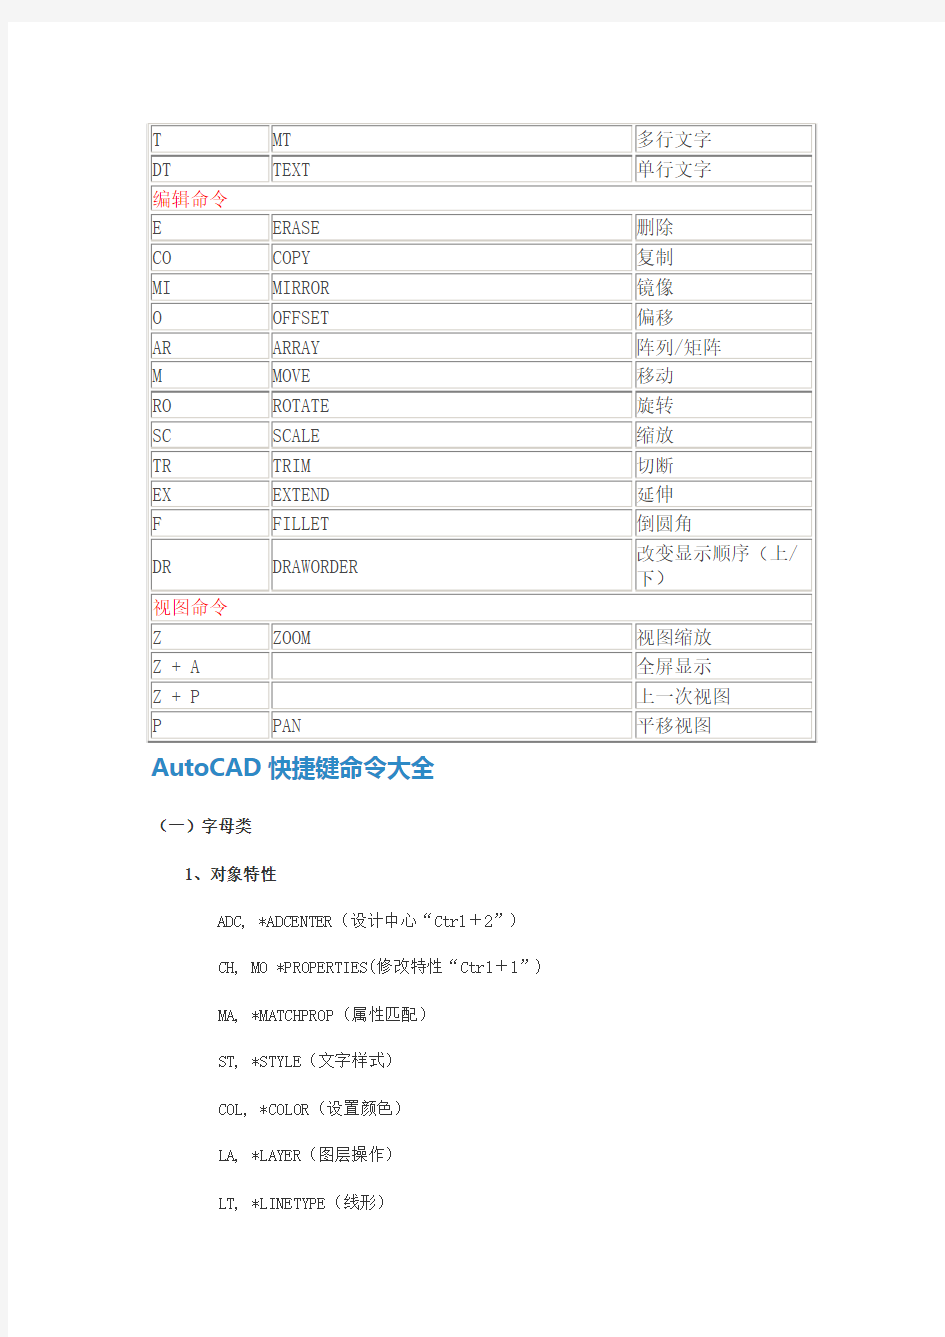 AutoCAD命令缩写一览表